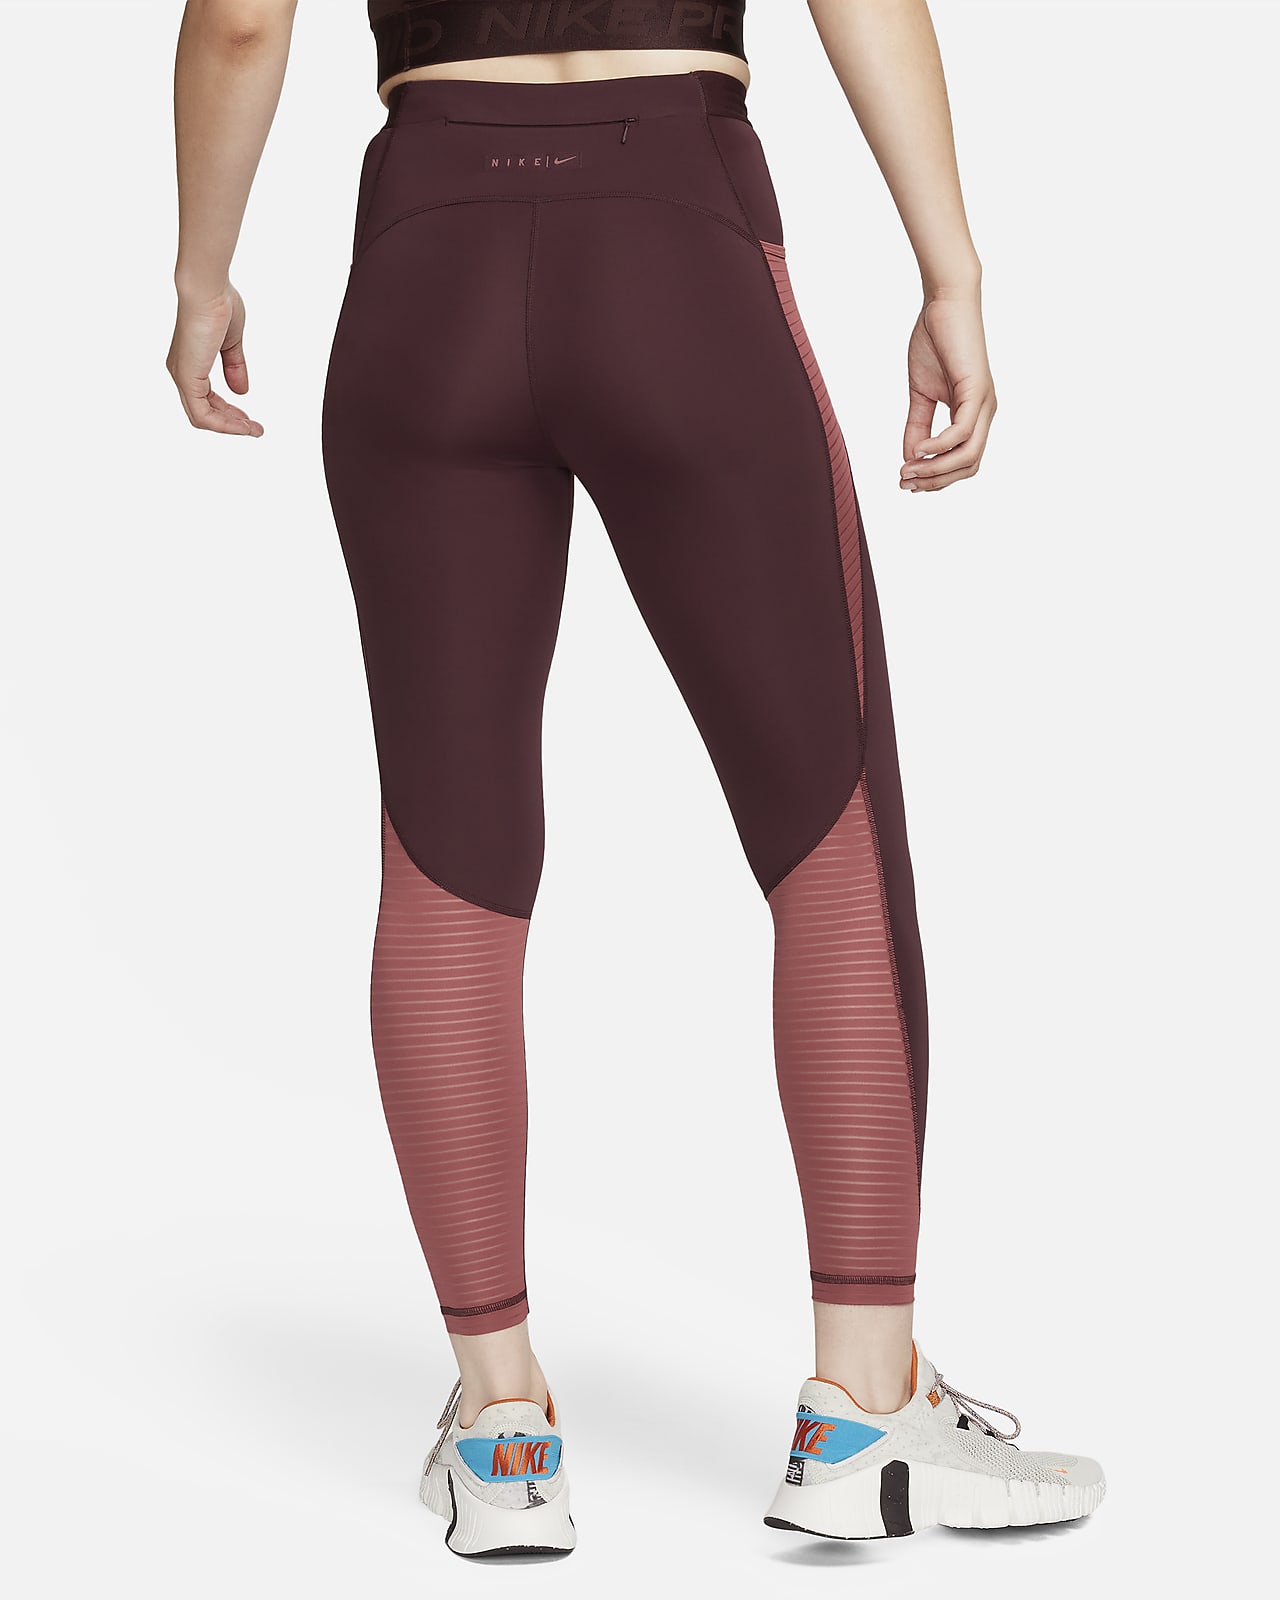 Tabla de tallas de leggings para mujer. Nike